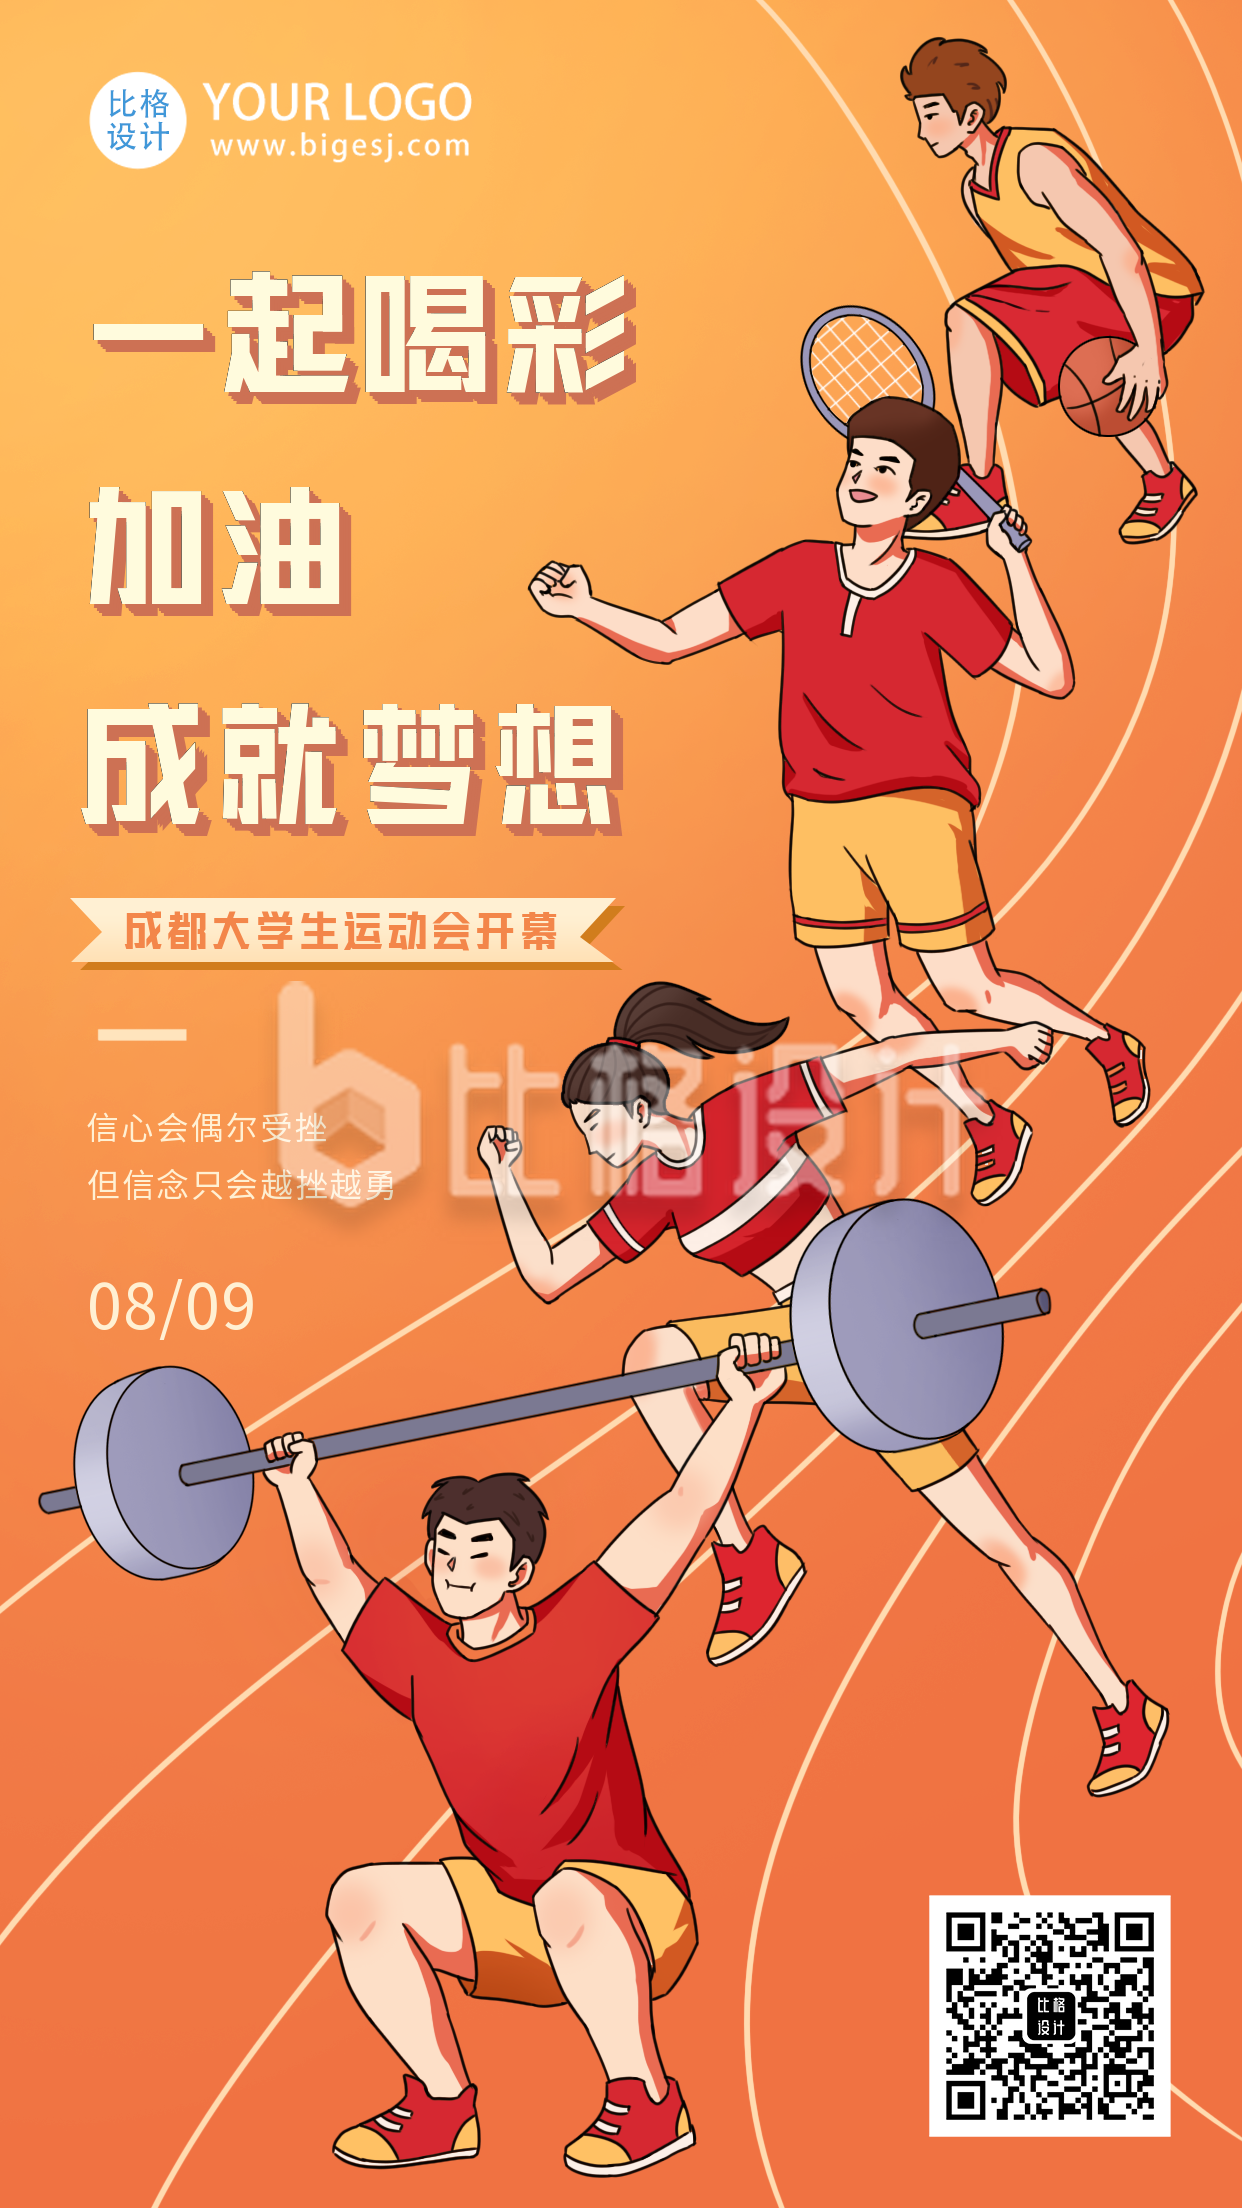 成都大运会运动会比赛体育宣传活动手机海报